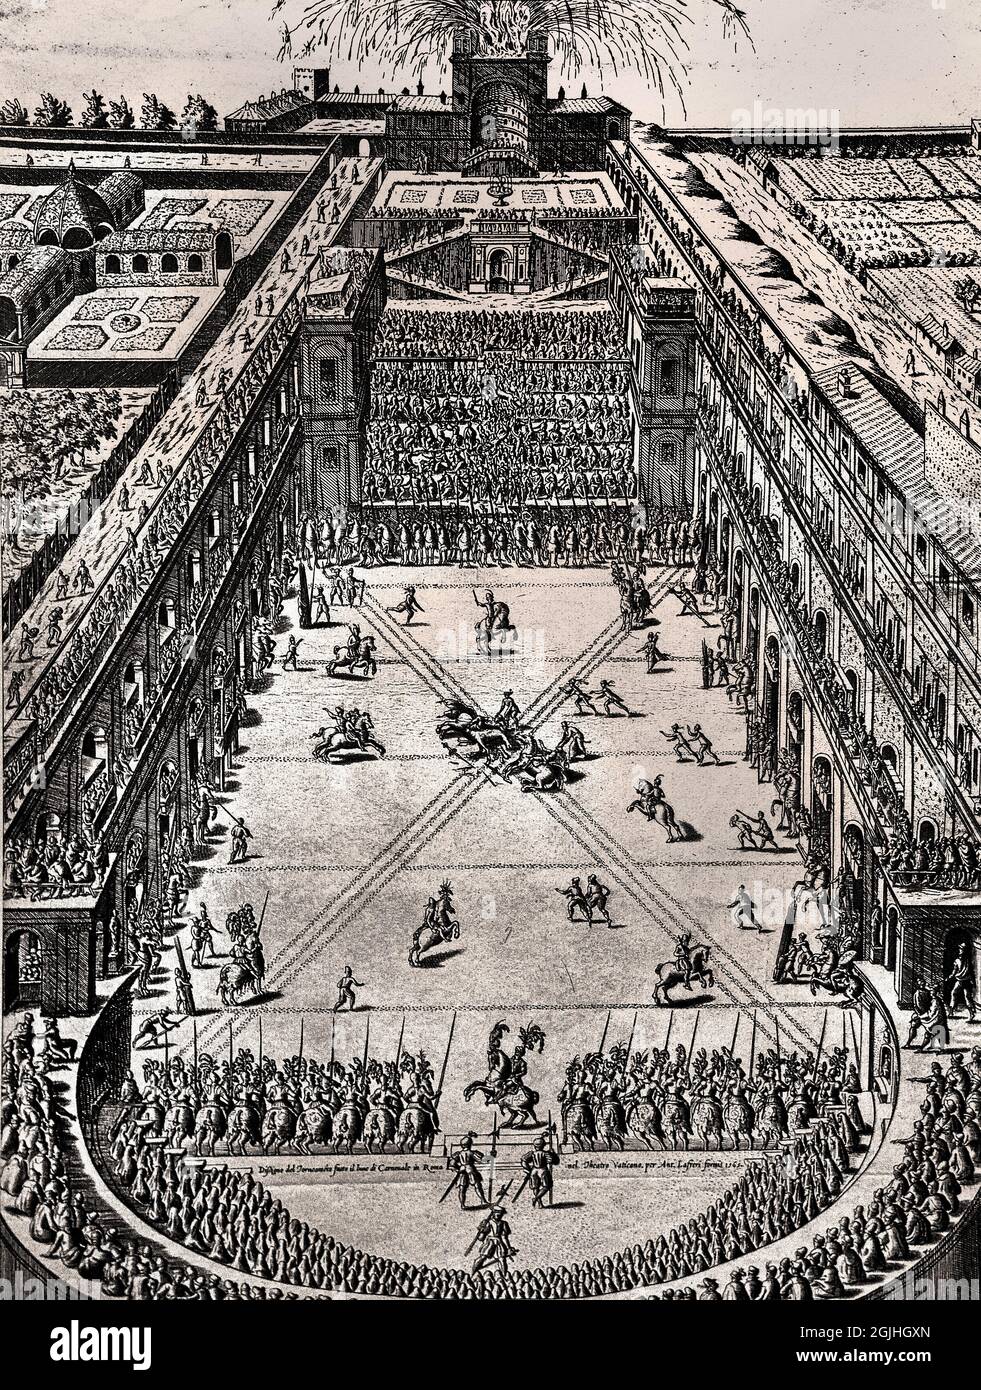 Le Tournoi tenu lundi de carnaval au théâtre du vatican Rome 5 mars 1565 par Etienne Duperac ( miroir de la magnificence romaine ) par Antonio Lafery 1565 Italie Italien, Banque D'Images